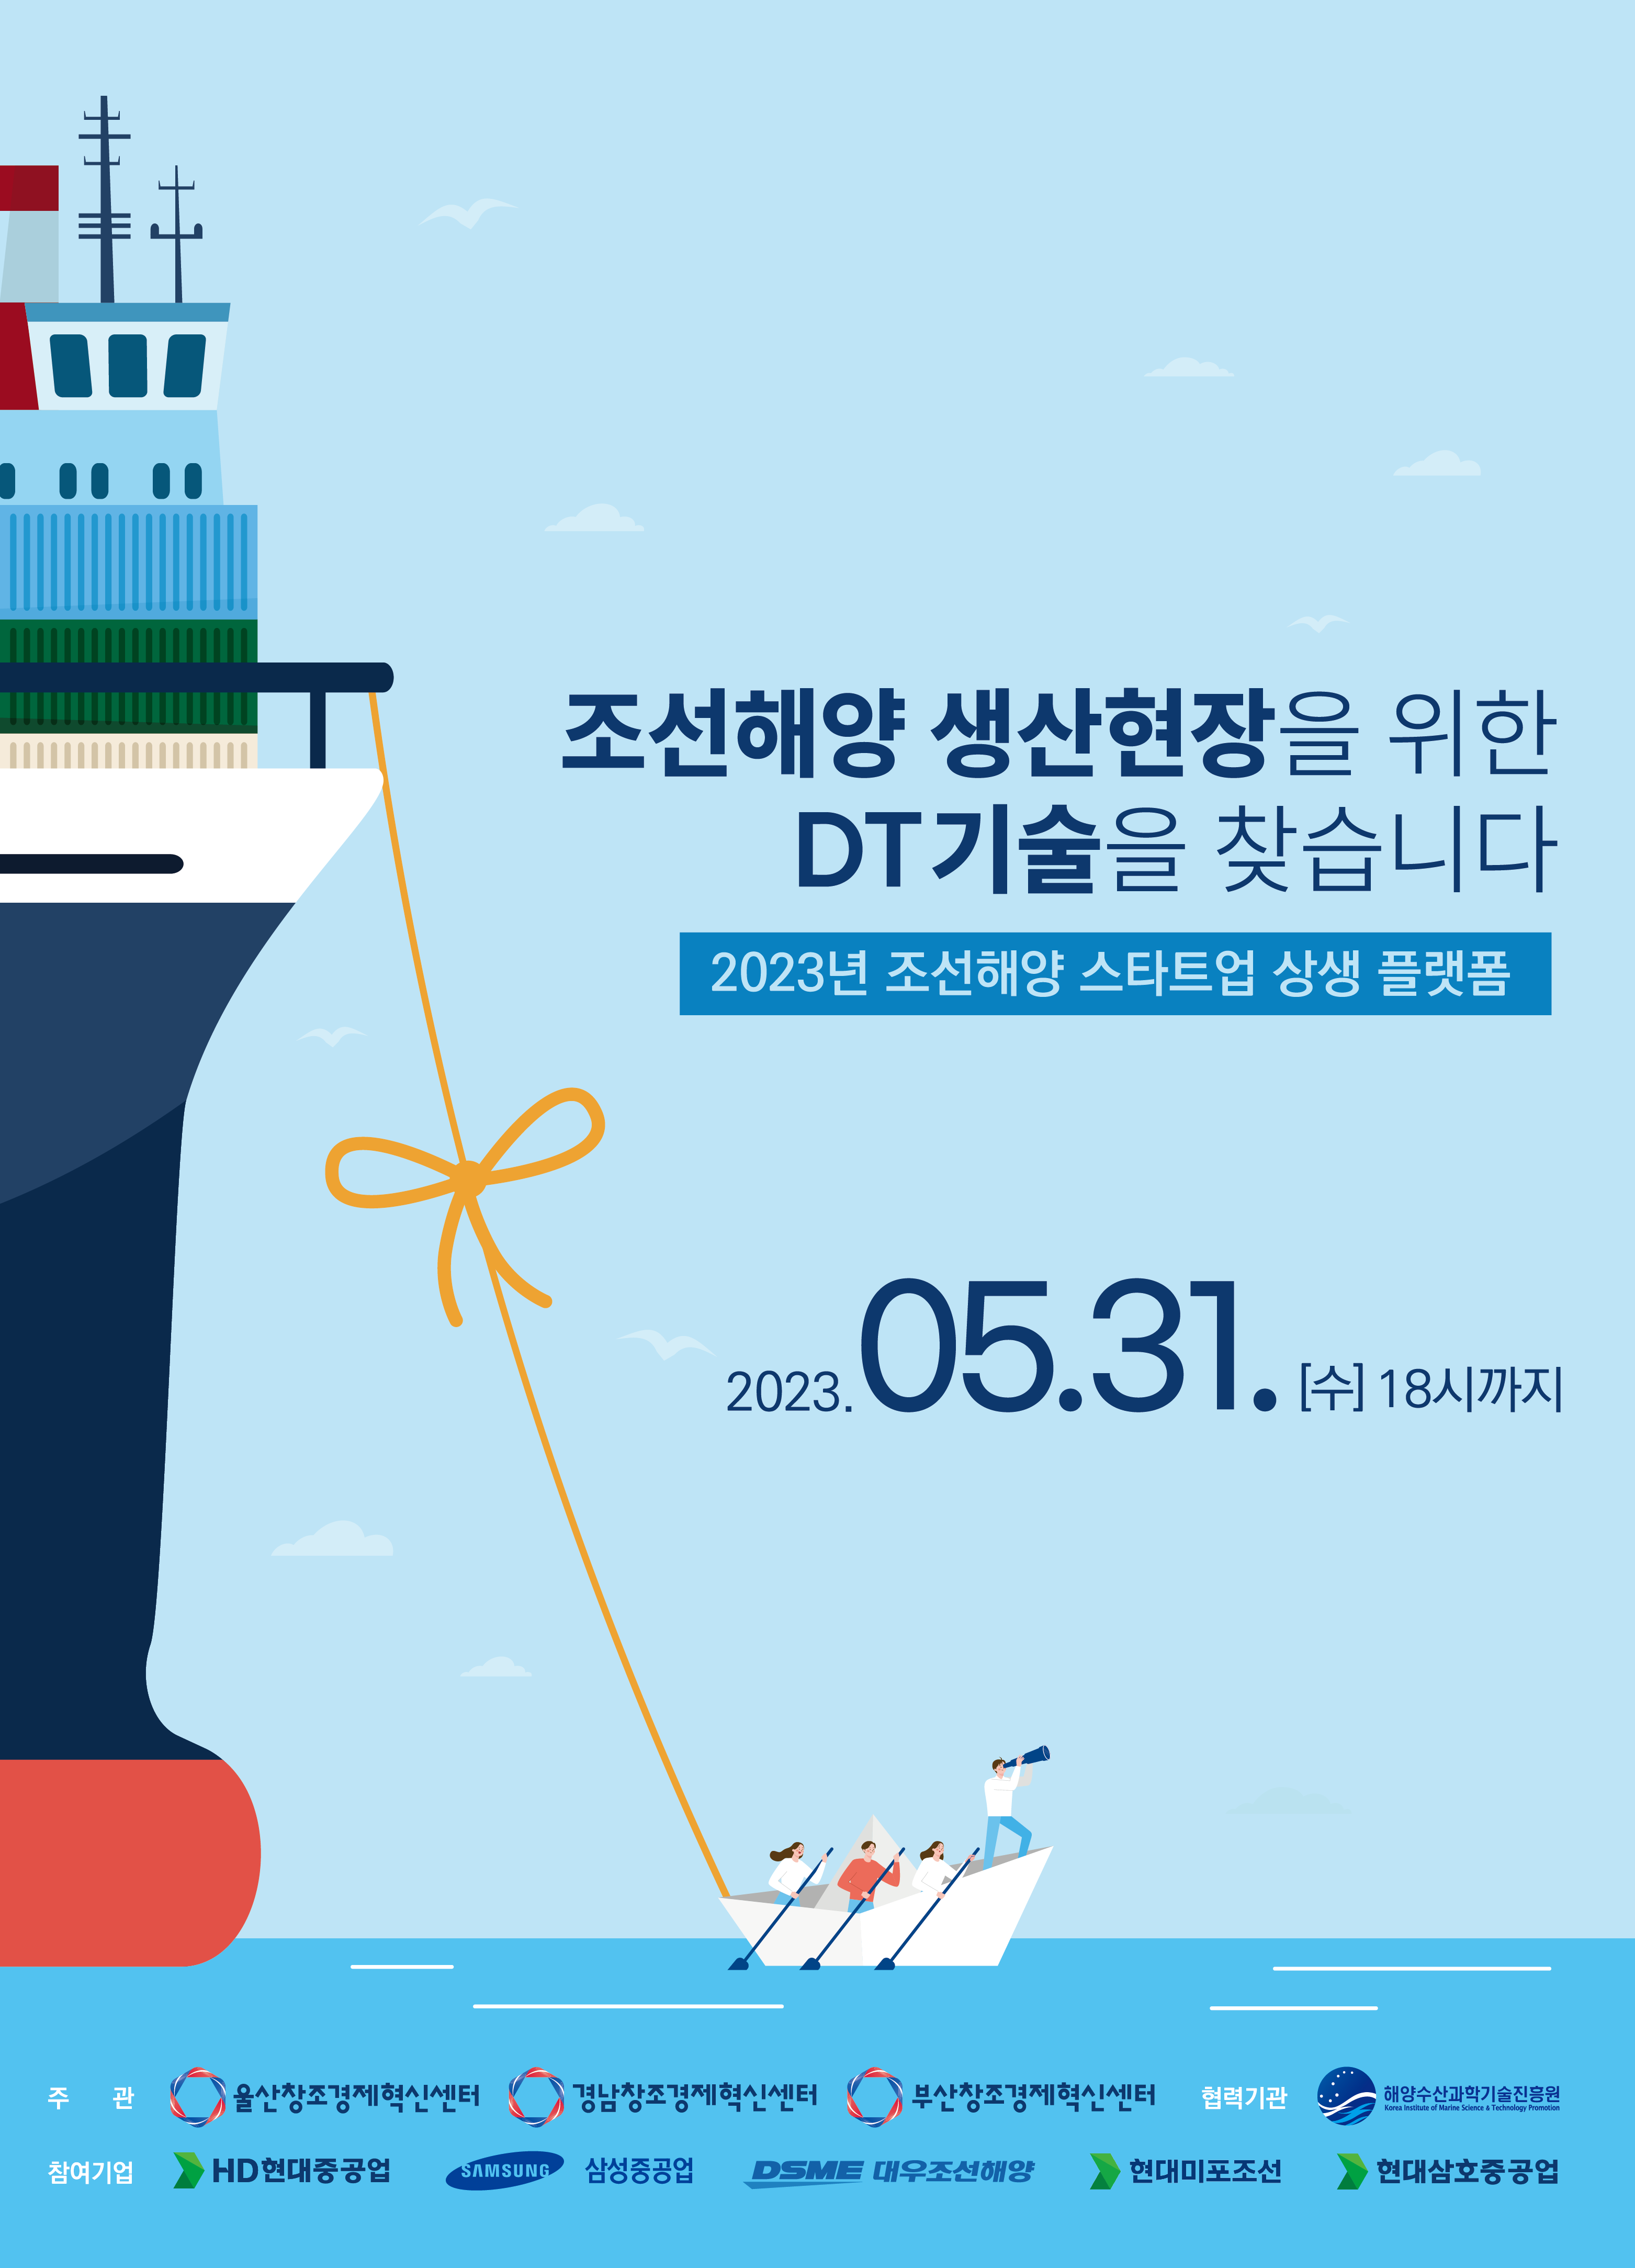 『2023년 조선해양 스타트업 상생 플랫폼』 참여기업 모집 썸네일 이미지